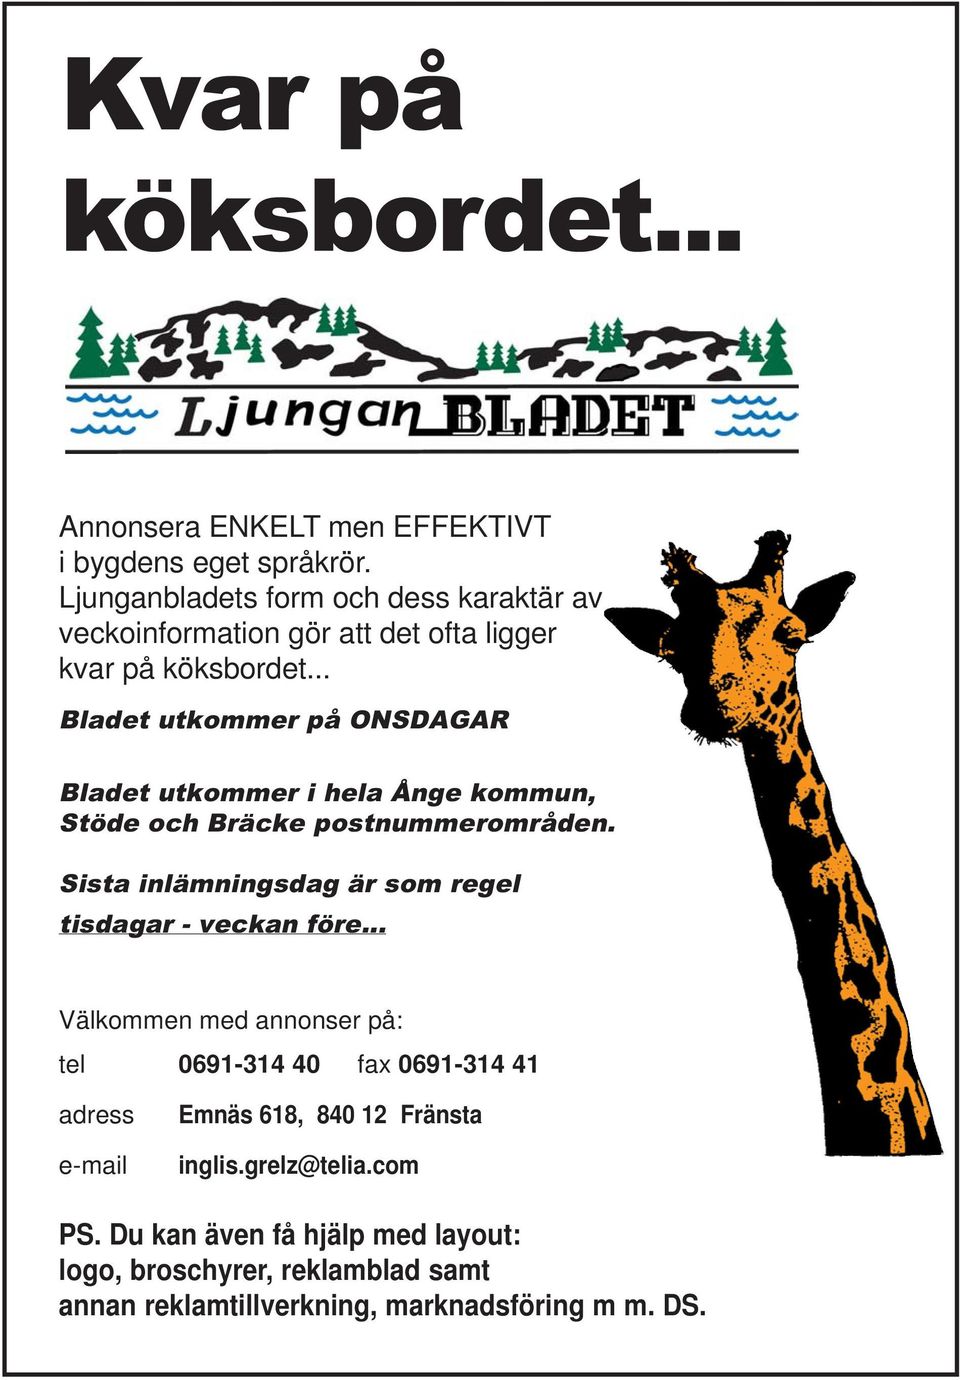 .. Bladet utkommer på ONSDAGAR Bladet utkommer i hela Ånge kommun, Stöde och Bräcke postnummerområden.